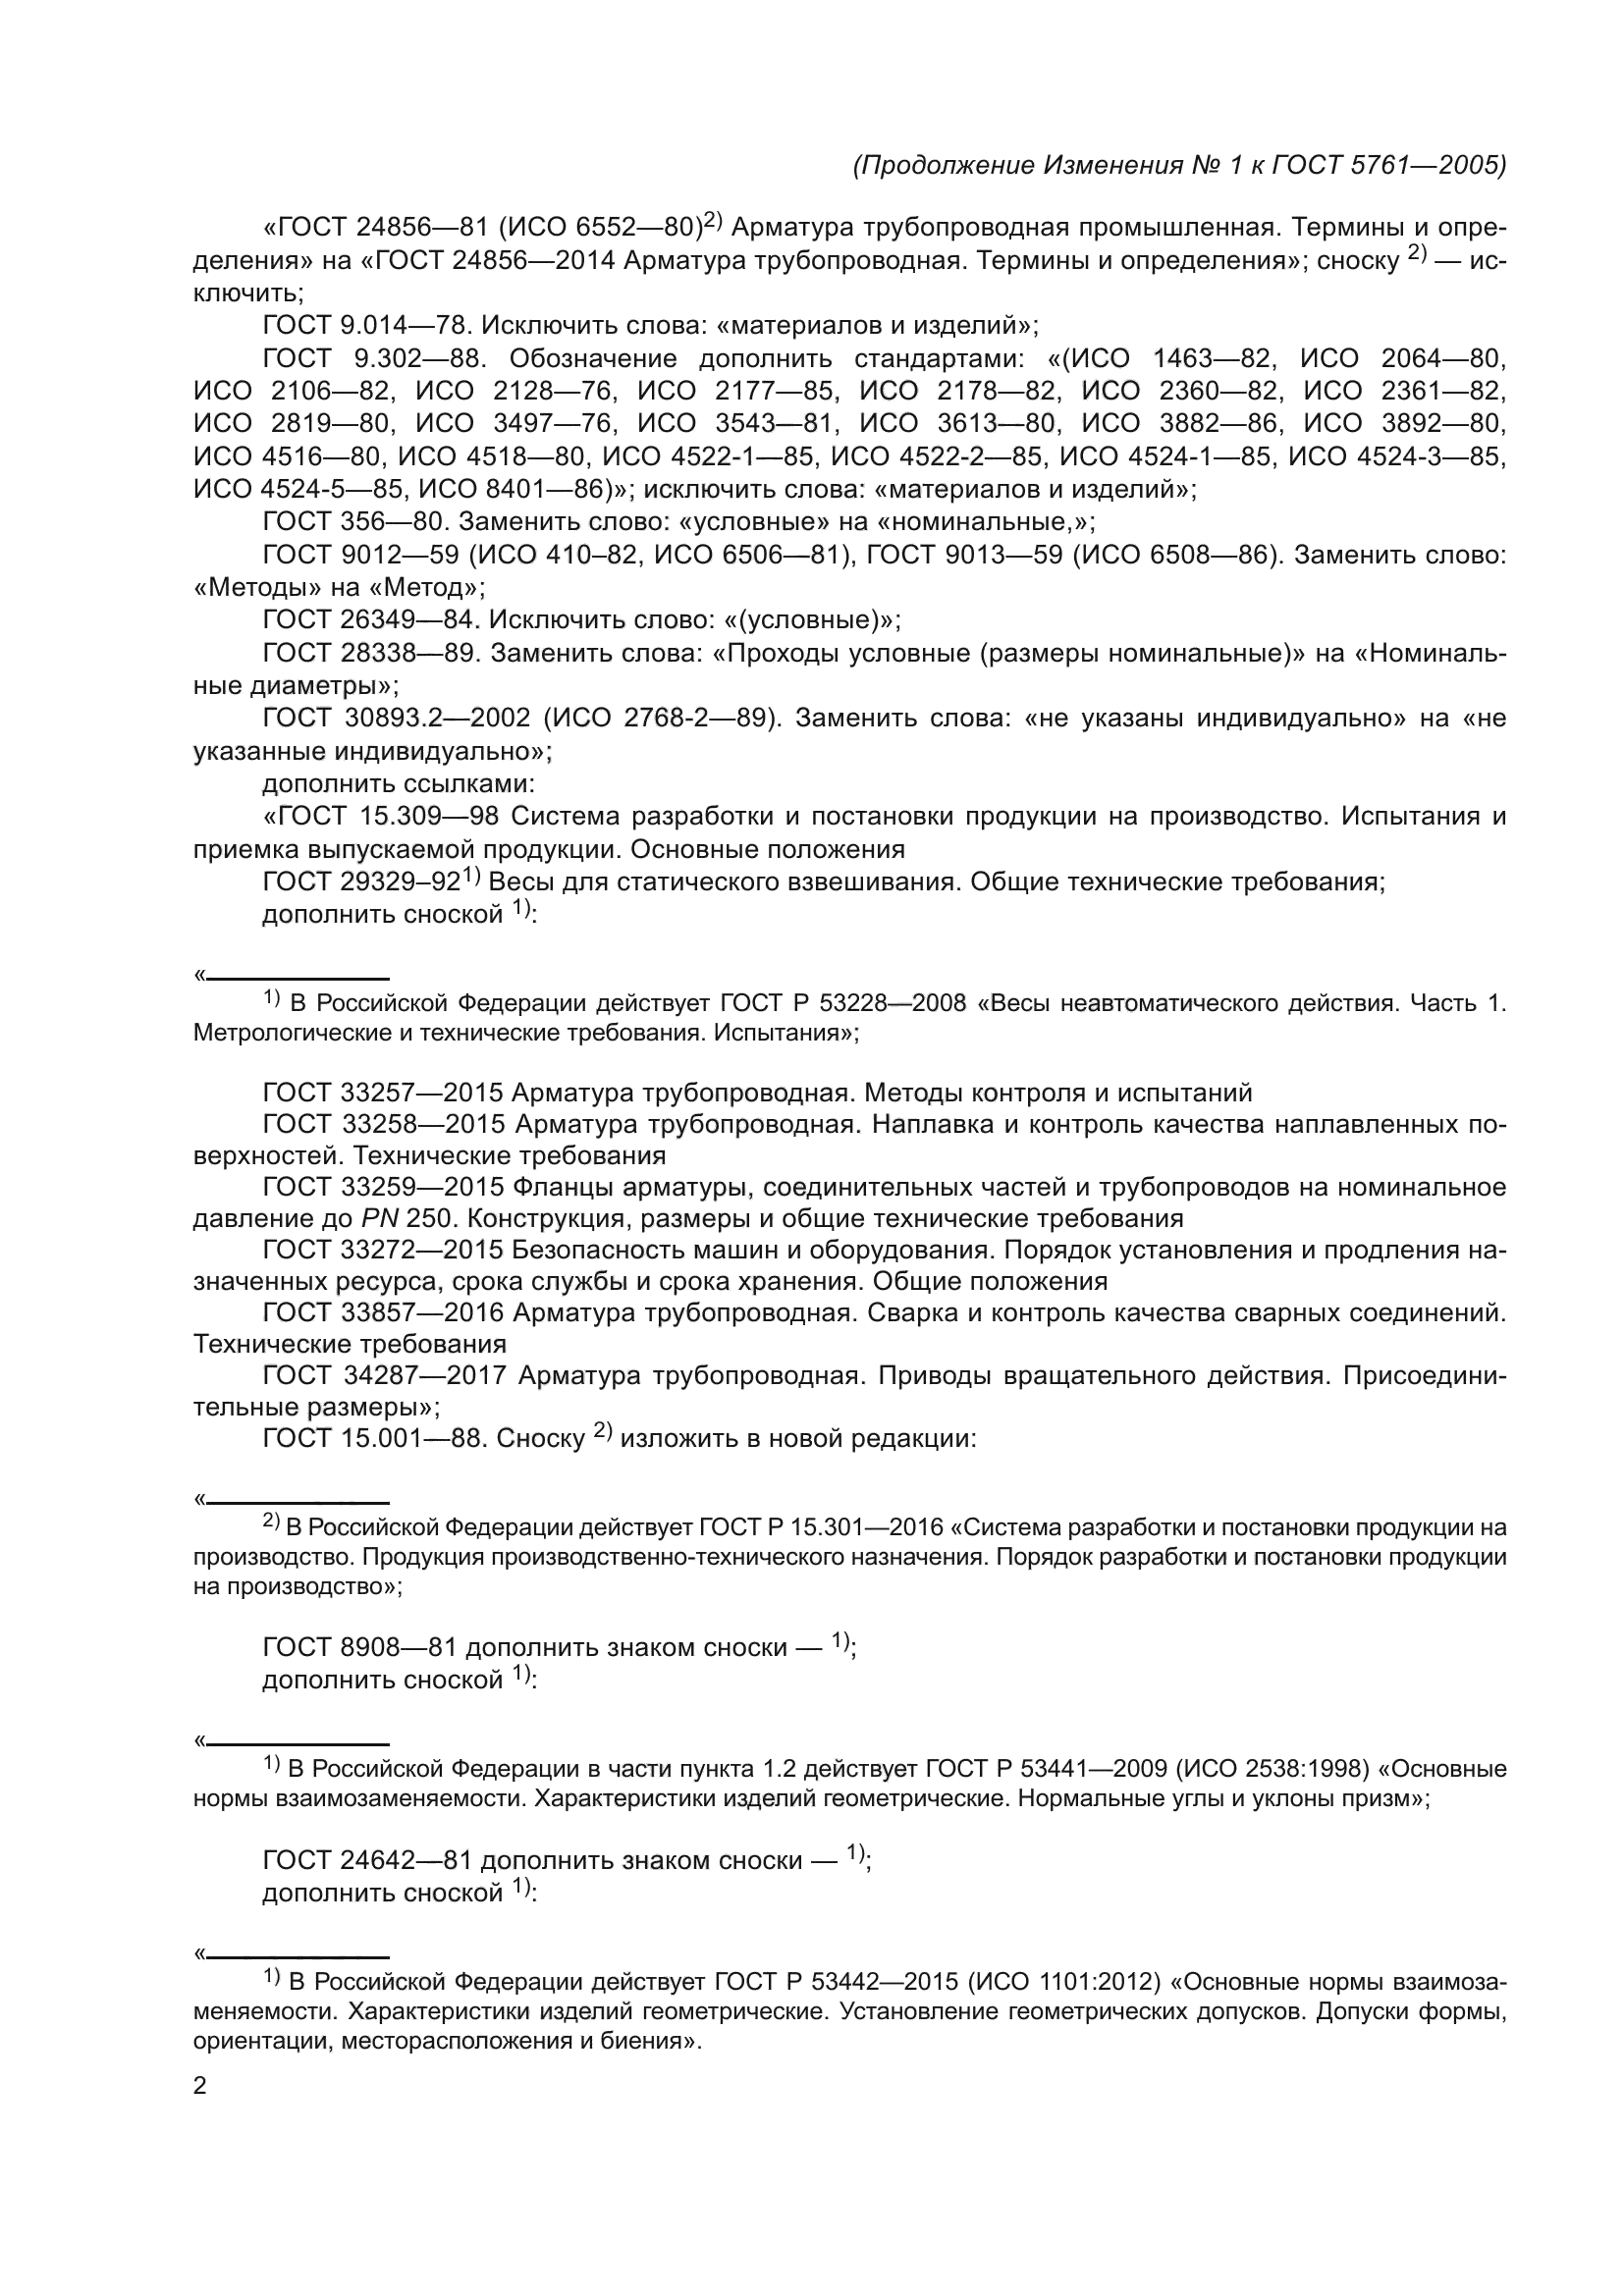 Изменение №1 к ГОСТ 5761-2005